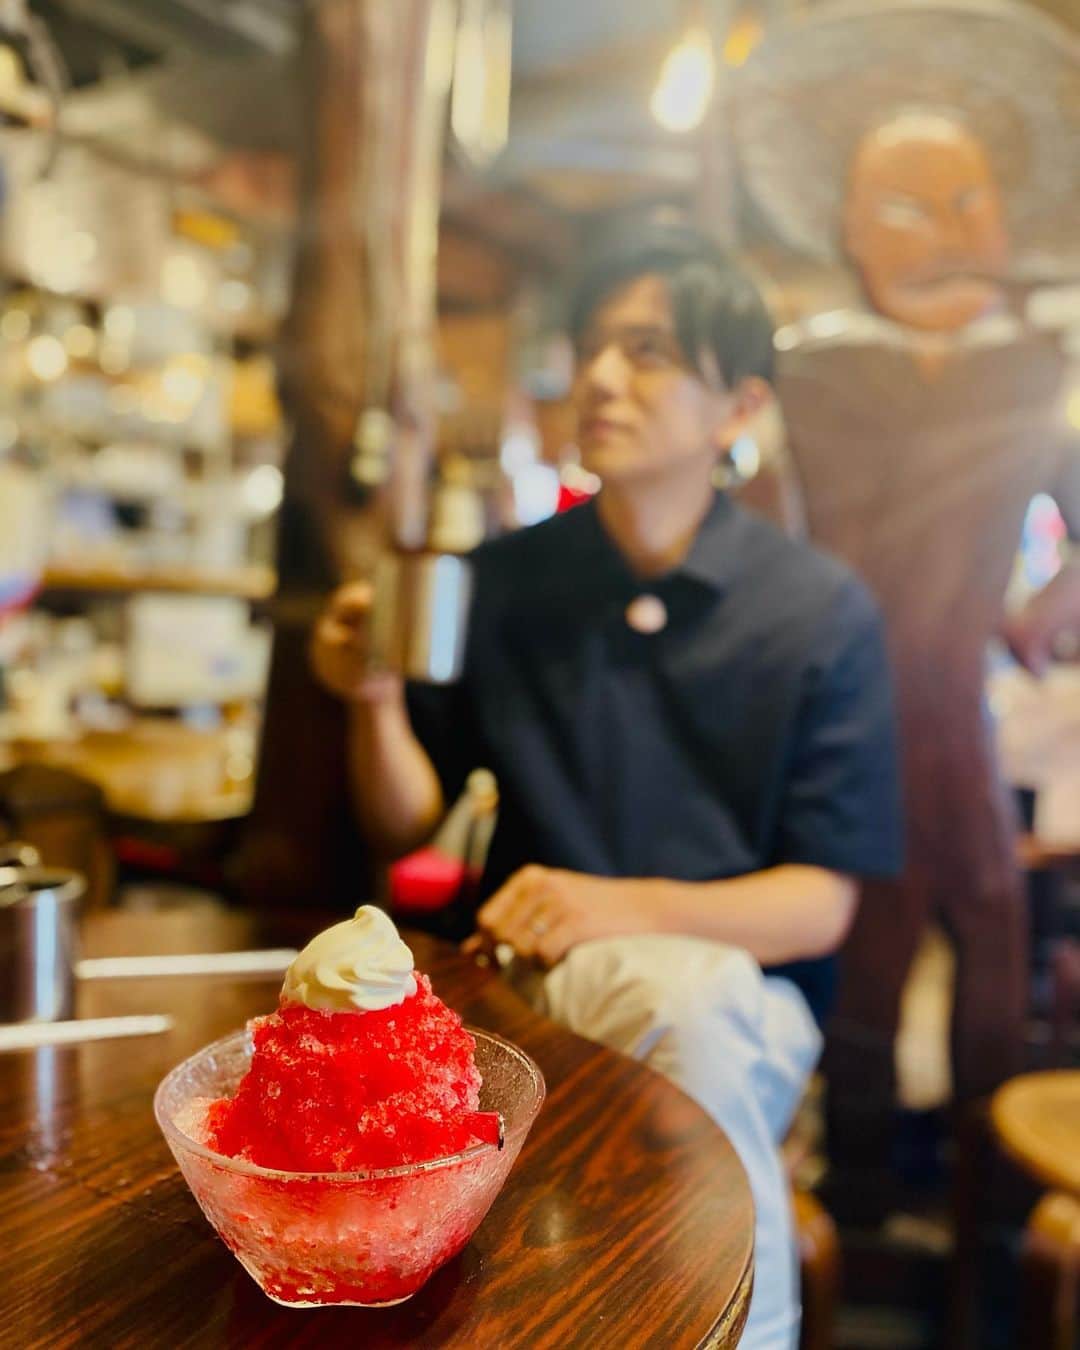 青木源太のインスタグラム：「真夏のロケの休憩時間に。  今日は珍しく名古屋で2本の仕事が重なりました。とても蒸し暑かったので、休憩時間にお邪魔した喫茶店では、カキ氷とアイスコーヒーでクールダウンの時間を作りました。さすがは喫茶店王国愛知県。街を歩けばすぐに素敵な喫茶店が見つかりますね。  1本目は東海テレビ「スイッチ」のロケ。今日巡ったお店では、母娘で楽しそうに食事をする親子にインタビューをさせていただきました。会話を弾ませながら笑顔で食事をしている姿は遠くから見ていても微笑ましくて、インタビュー後もナゾの親戚のおじさん目線で眺めてしまいました。  2本目はメ〜テレ「レコメシ 〜自慢のひとさら〜」のナレーション。いつもは東京で収録していますが、今日は名古屋のスタジオで。普段会えないスタッフの方々やキリンビールの担当者の皆さんとお会いできて、とても有意義な時間でした。毎週金曜日19:54〜、メ〜テレで放送しています。是非ご覧ください。  #スイッチ#東海テレビ#そういえば今朝#局内で流星くんに偶然会った#横浜流星#イェーイ#レコメシ#メ〜テレ#麒麟#キリン#キリン一番搾り#生ビール#雑味のない味わい」